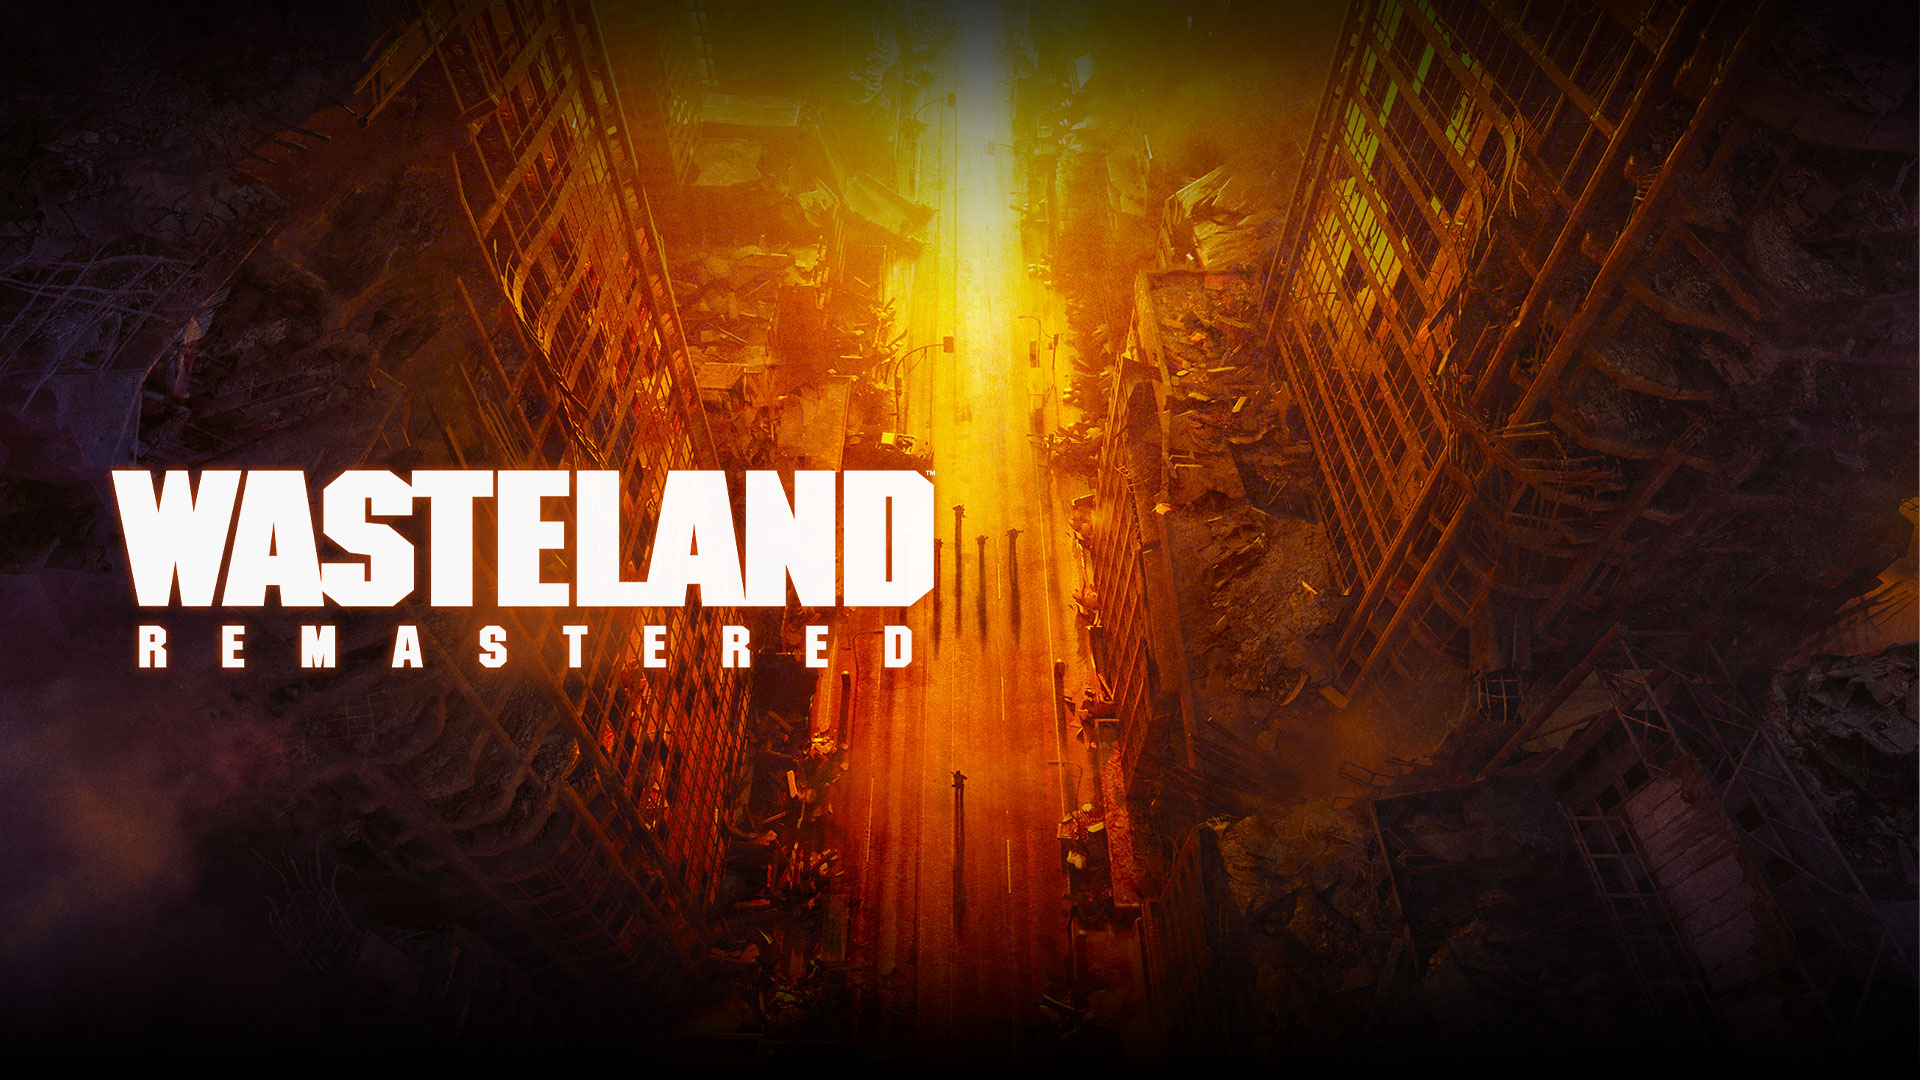 Wasteland Remastered, vue de dessus des bâtiments en ruine et des gens dans la rue dans des teintes jaunes, orange et rouges